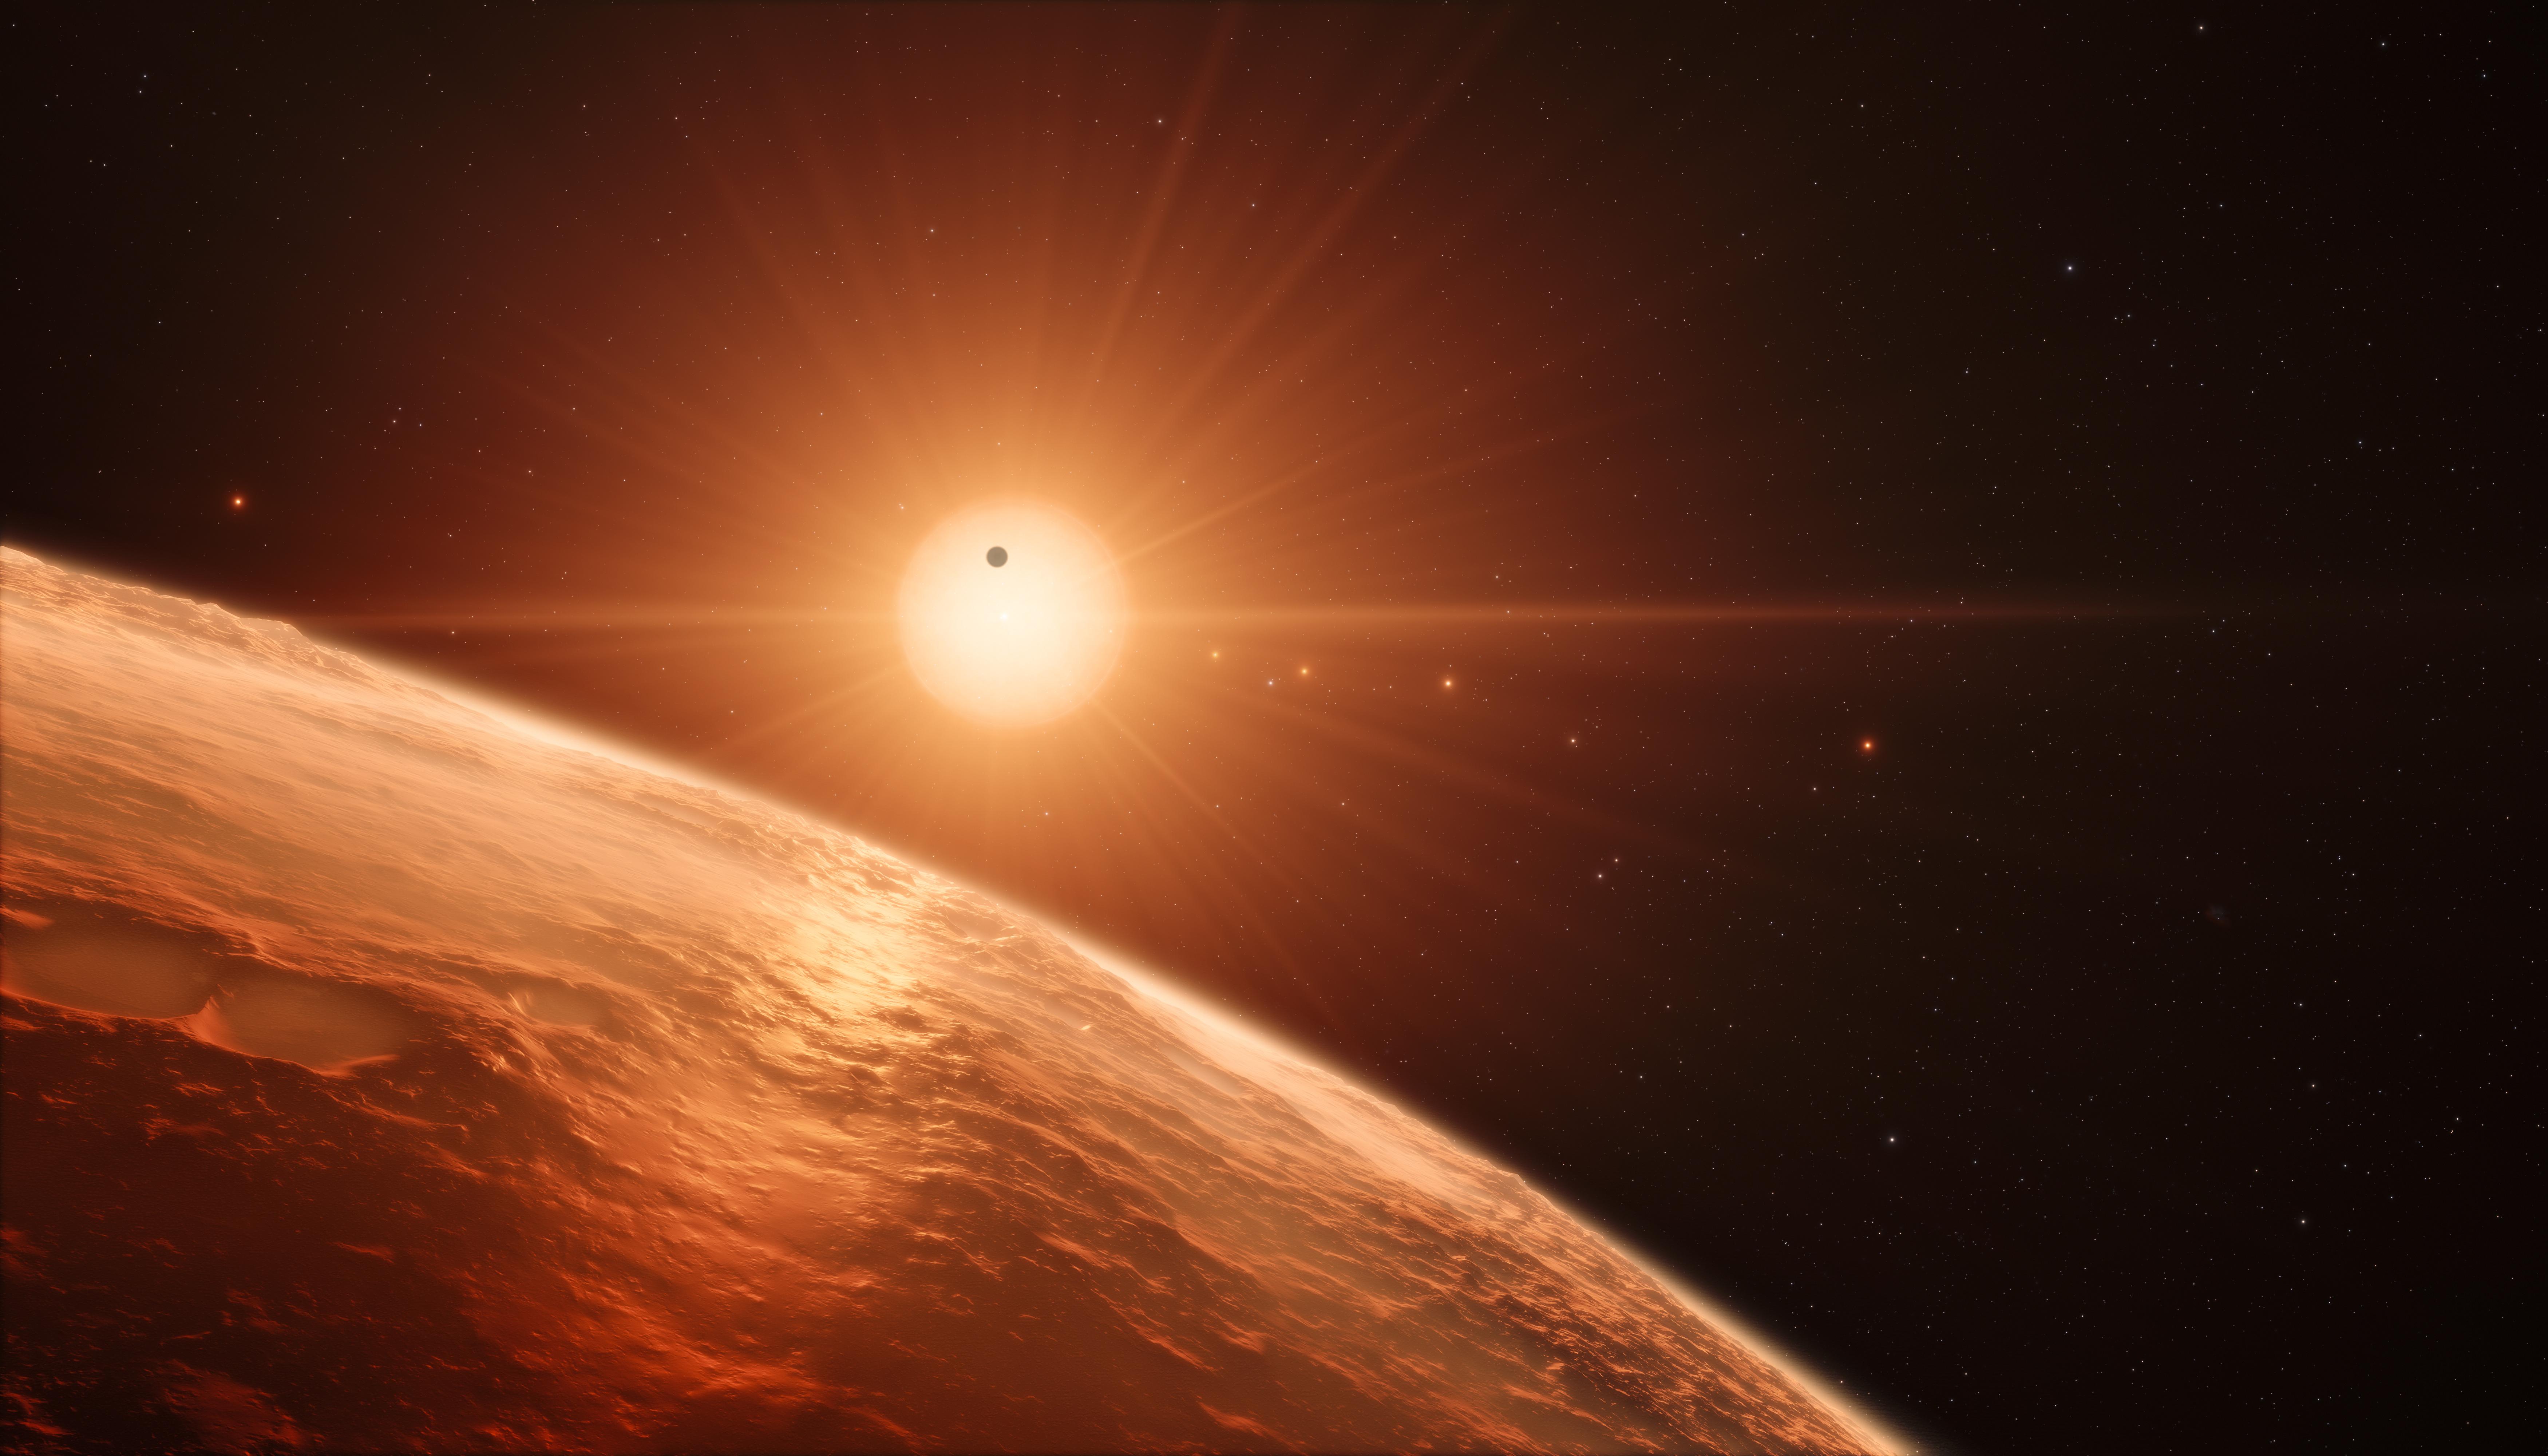 Wallpaper TRAPPIST- Planet, Dwarf star, HD, 4K, 8K, Space